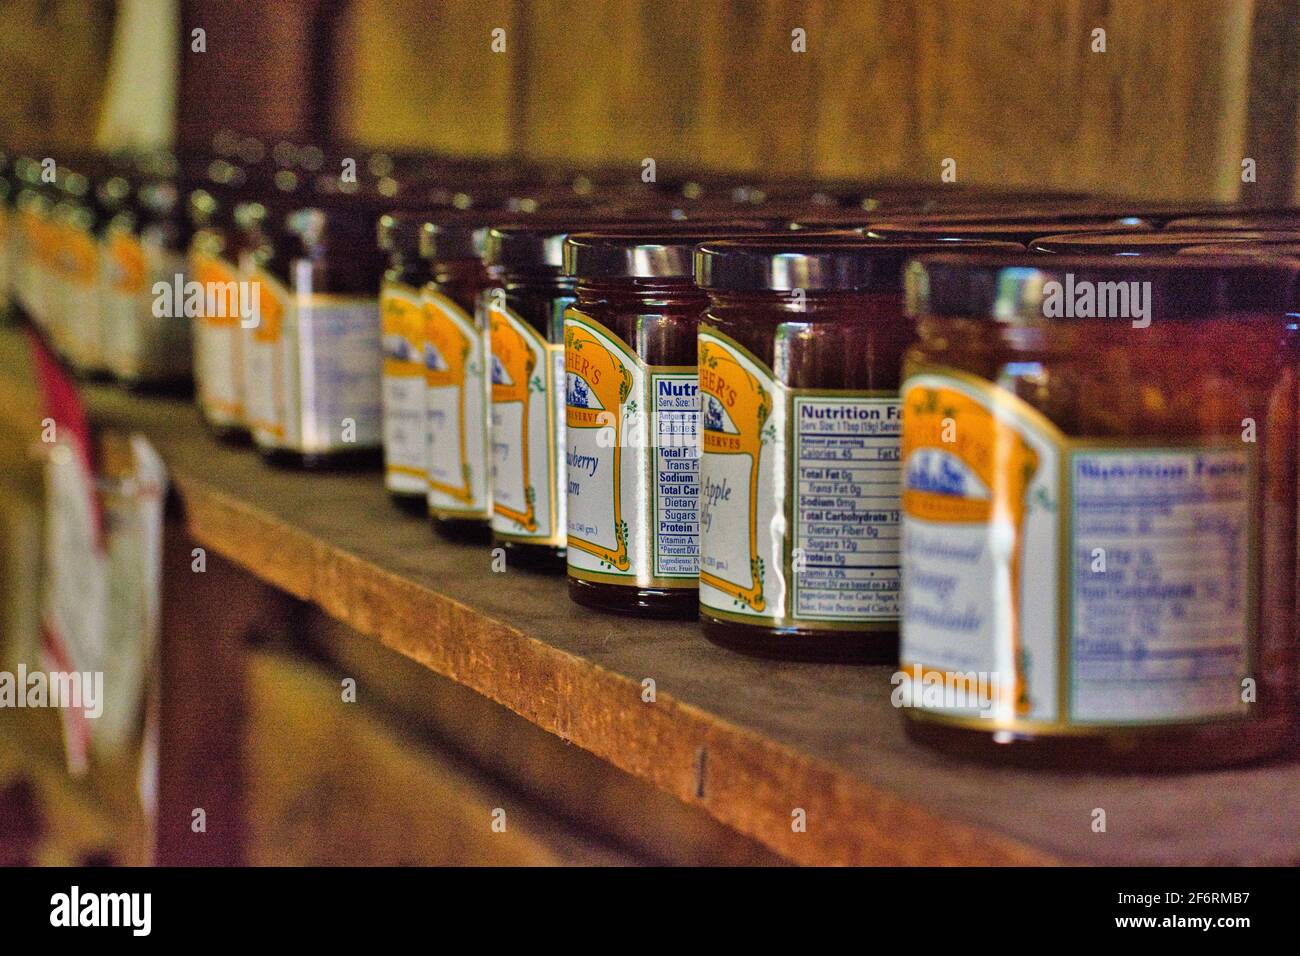 Row of homemade Jam preserves line a market shelf Stock Photo